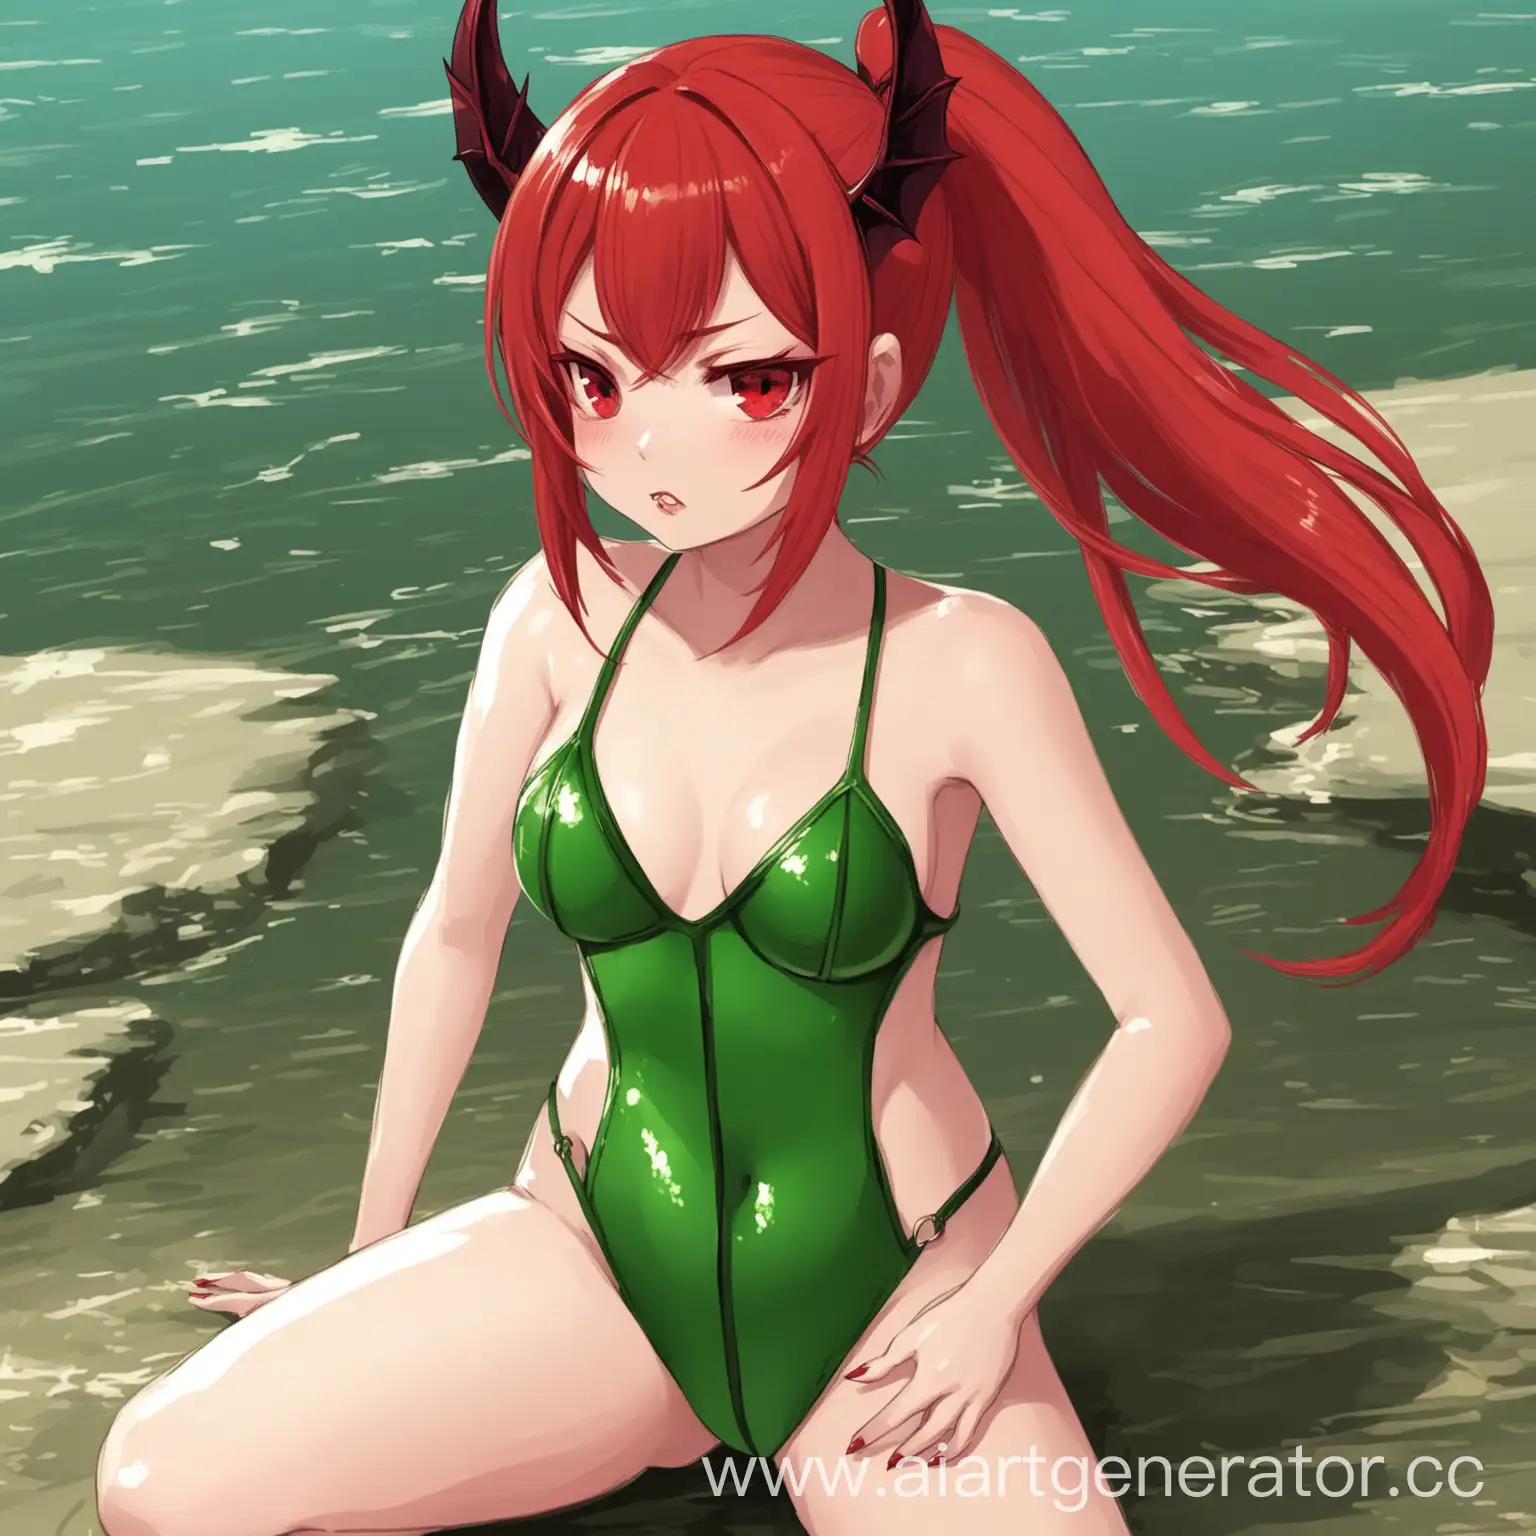 Милая девушка с рыжими волосами с хвостиком в зелёной купальнике суккуб